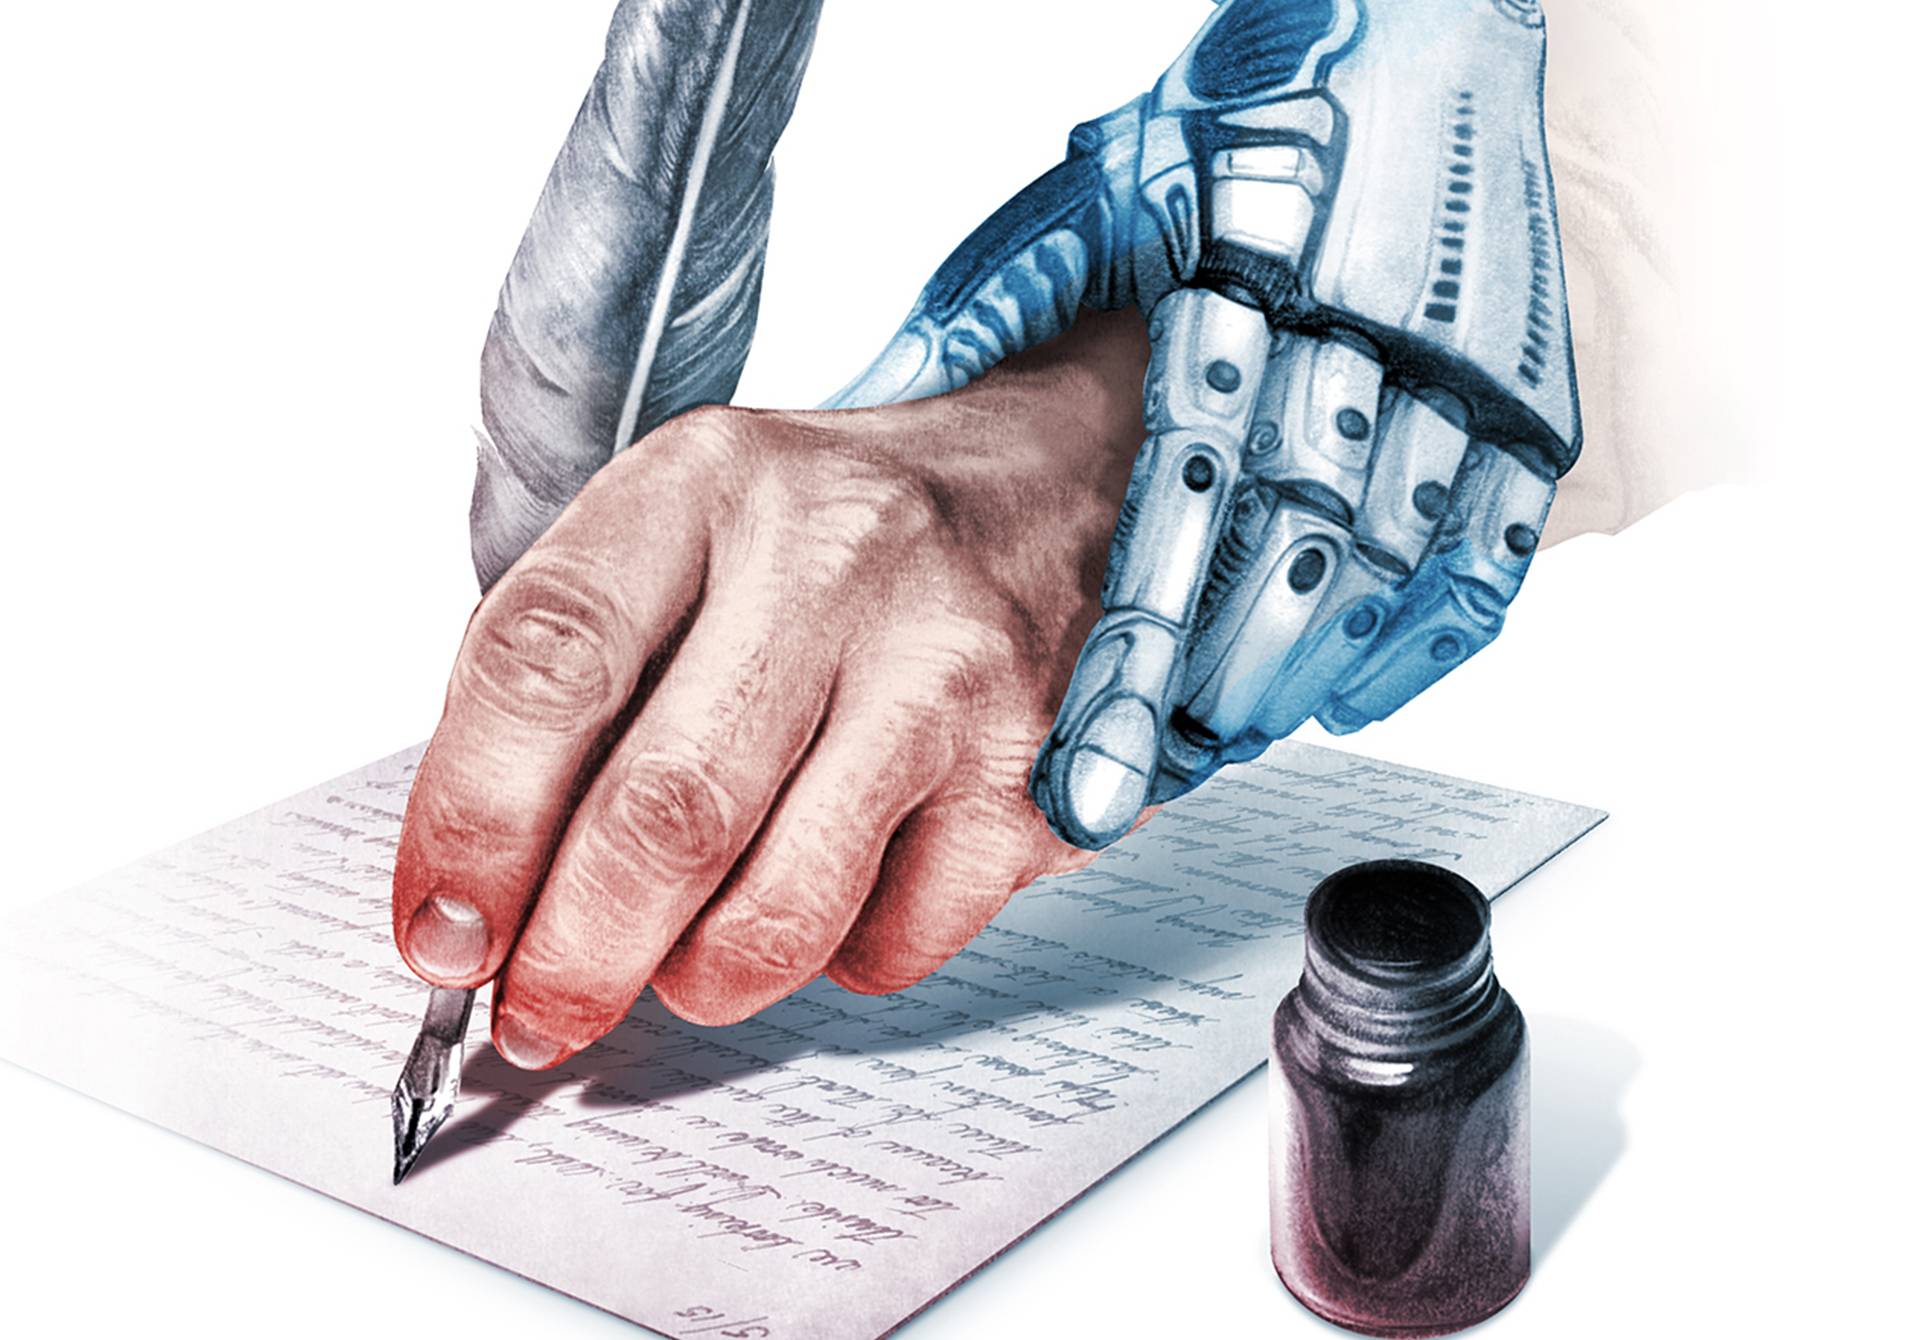 l'intelligence artificielle guide une main qui écrit